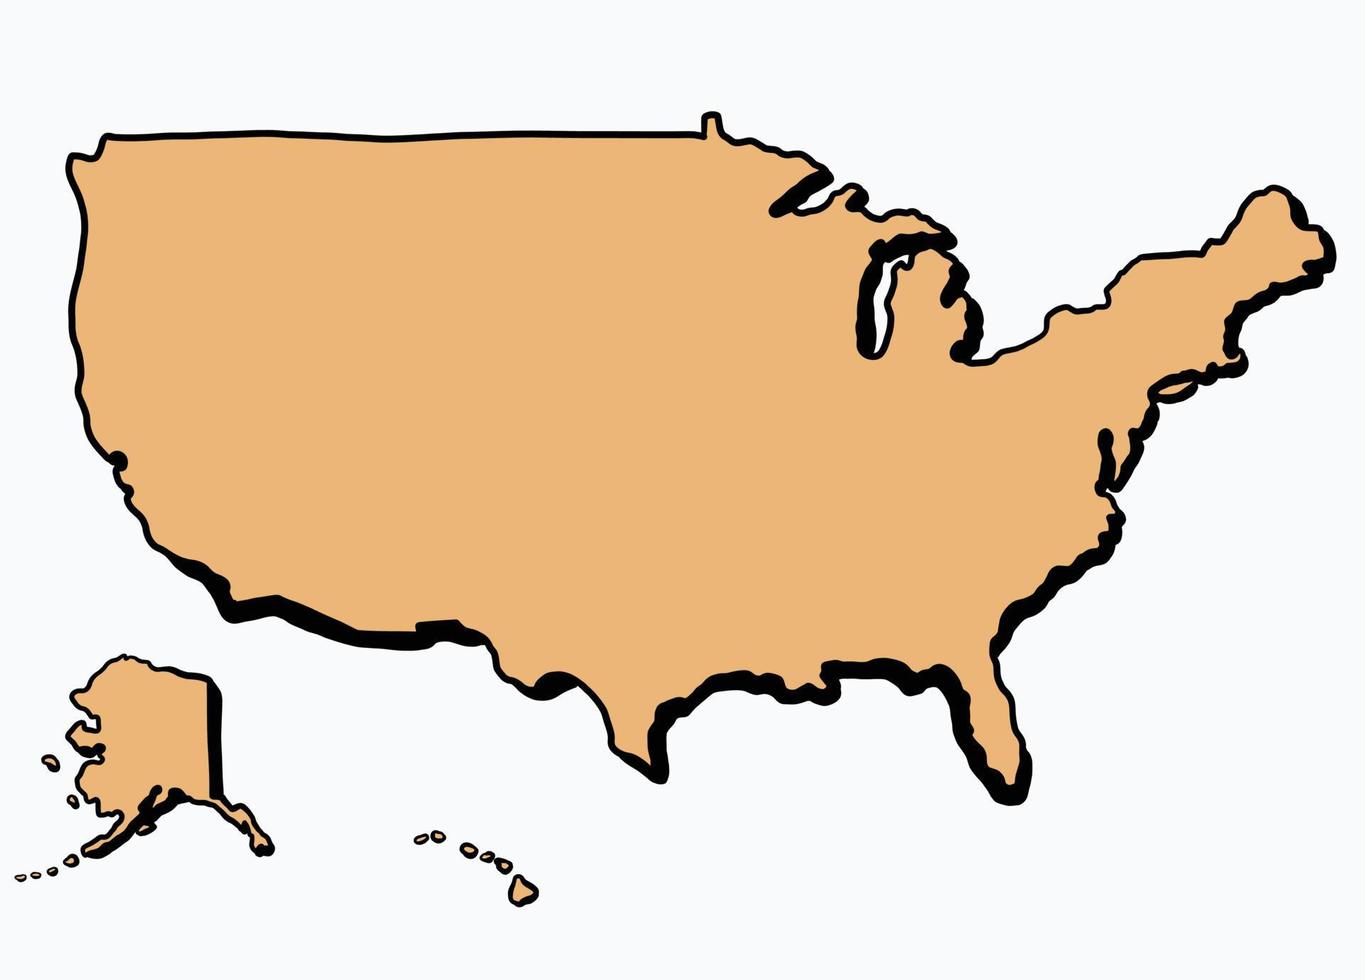 doodle dessin à main levée de la carte des états-unis d'amérique. v vecteur